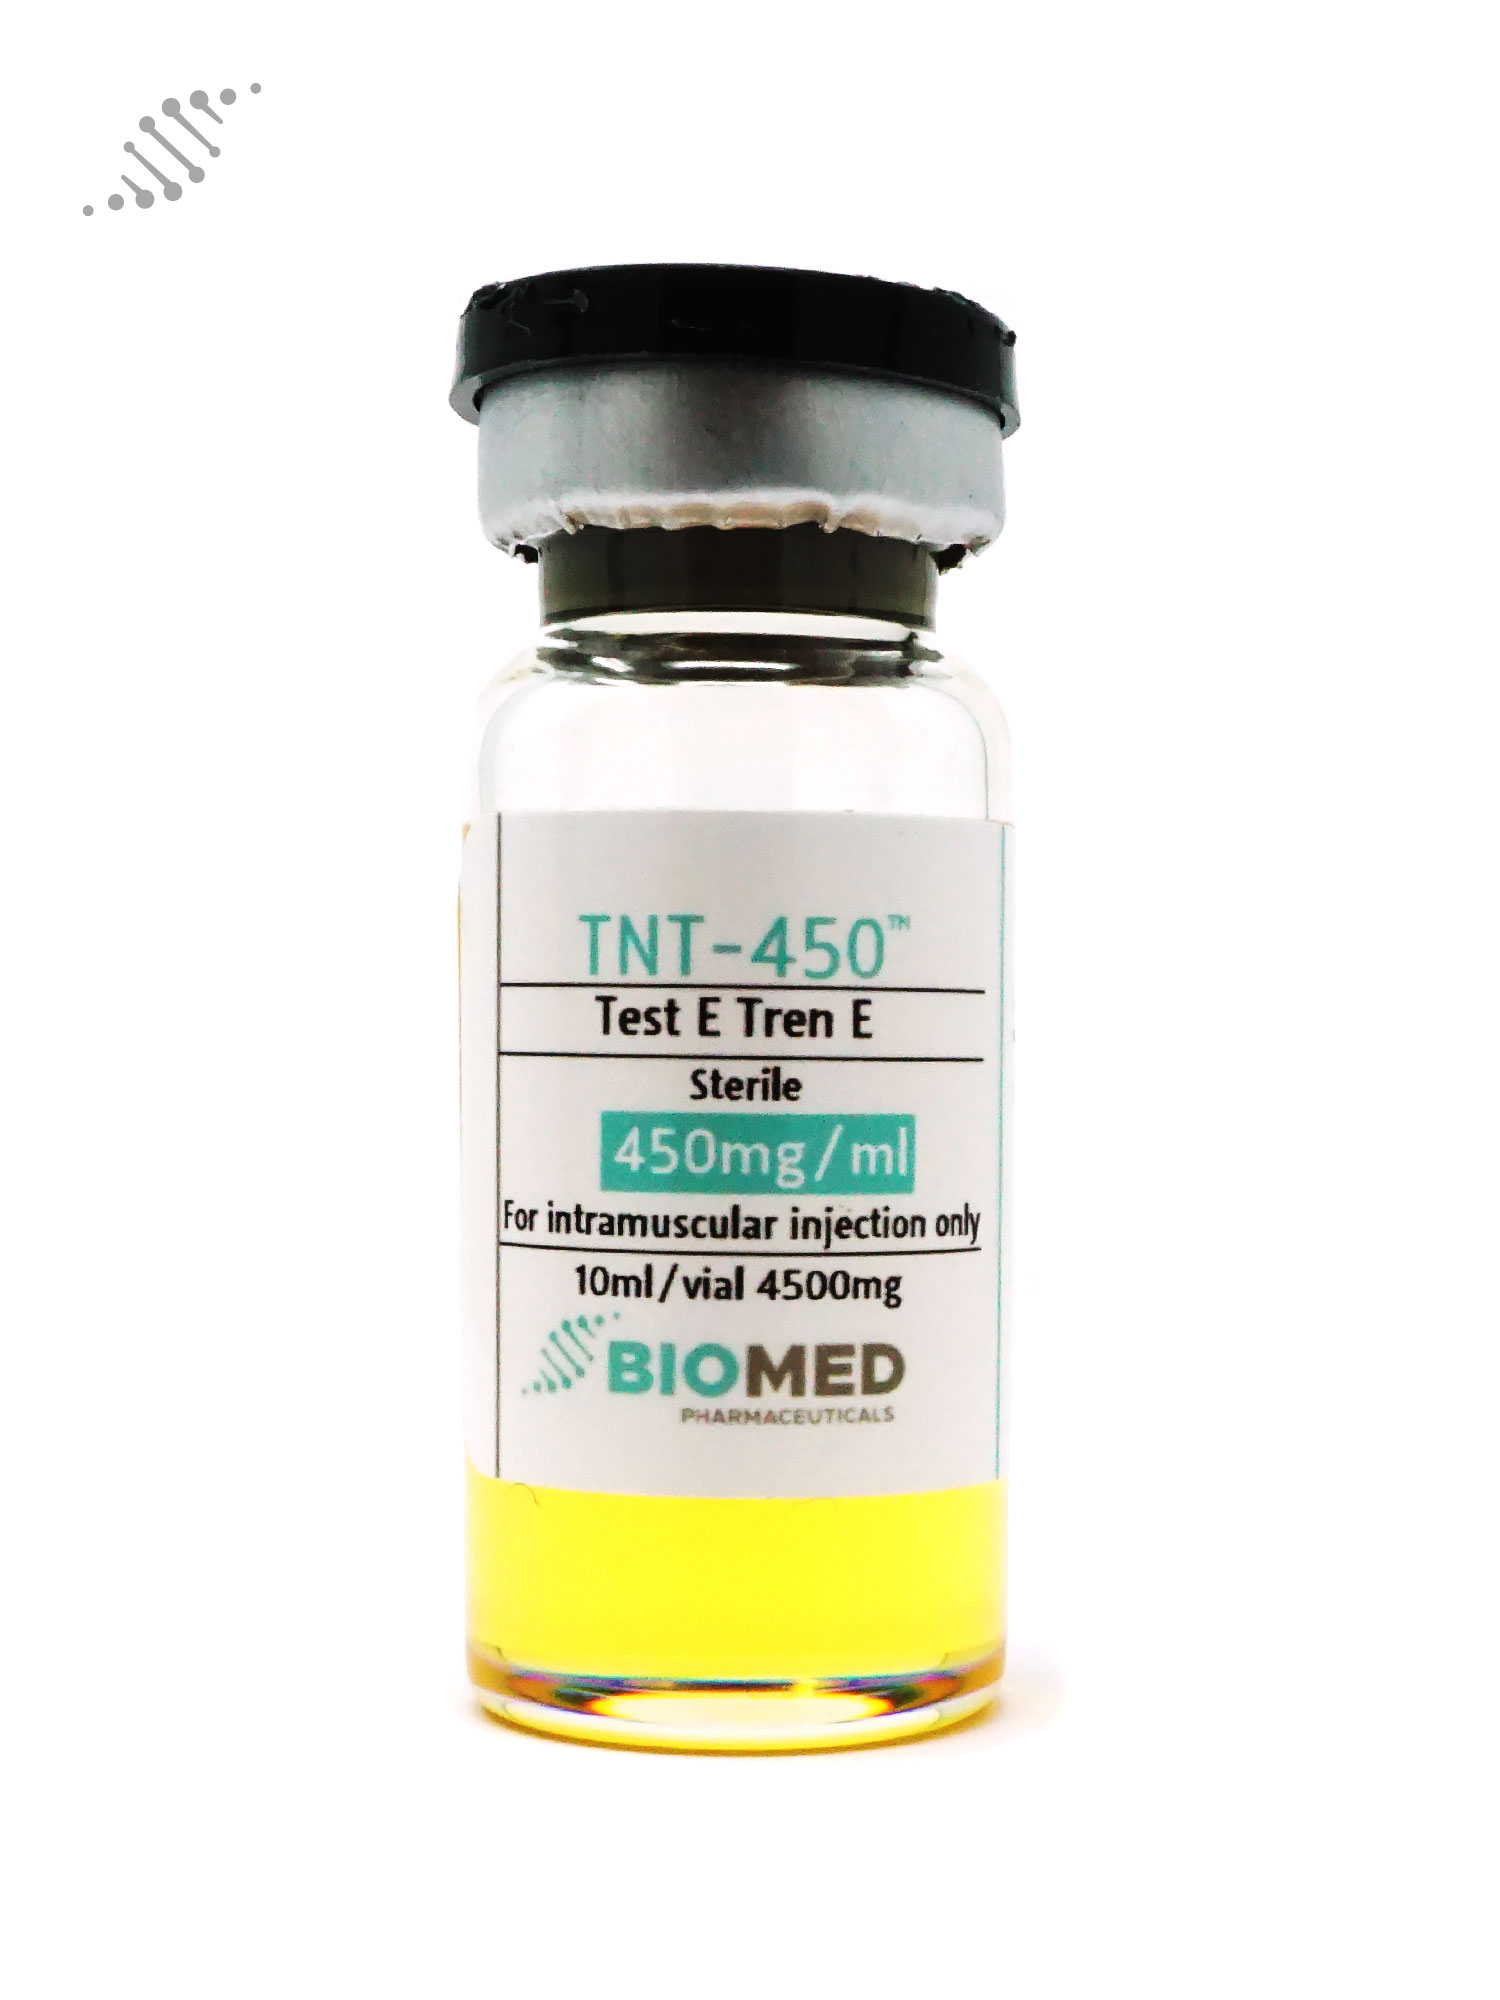 Biomed TNT-450 Test E Tren E 450mg/ml